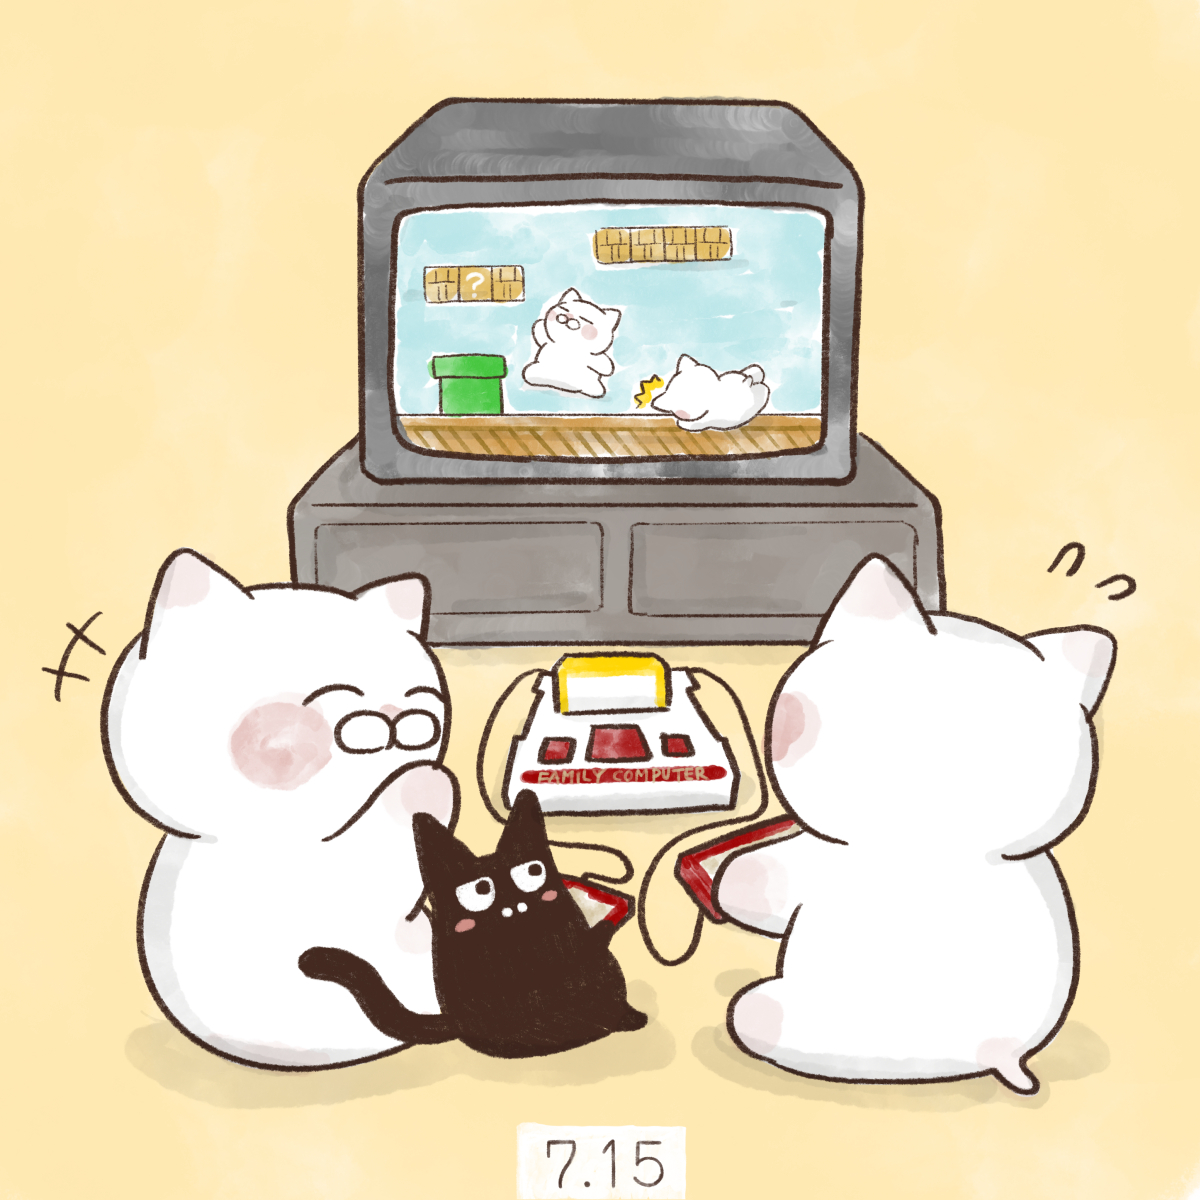 「7月15日【ファミコンの日】1983年のこの日、任天堂が家庭用ビデオゲーム機ファ」|大和猫のイラスト